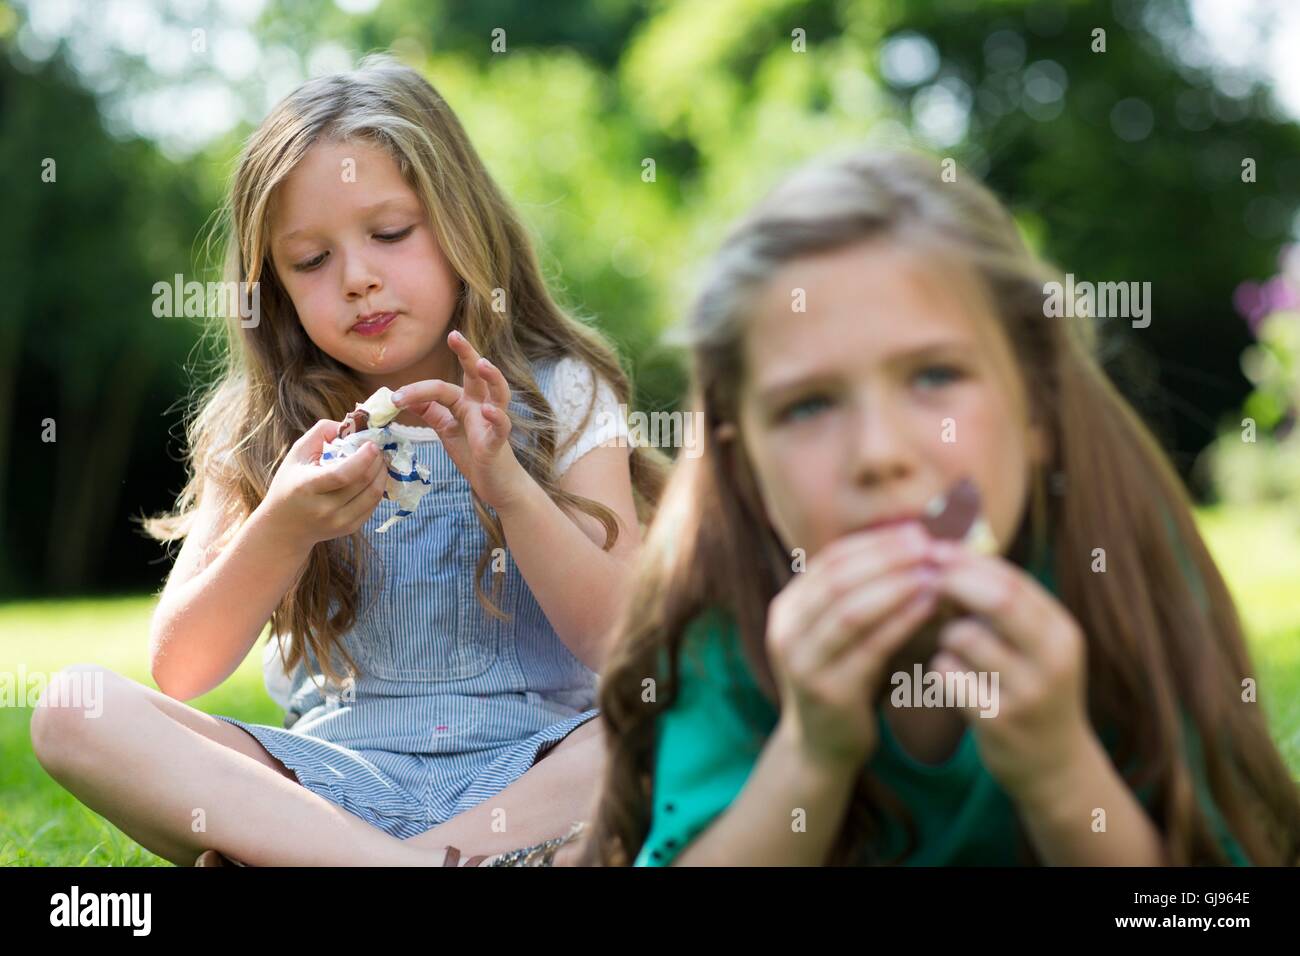 Proprietà rilasciato. Modello rilasciato. Le ragazze di mangiare gelati in giardino. Foto Stock